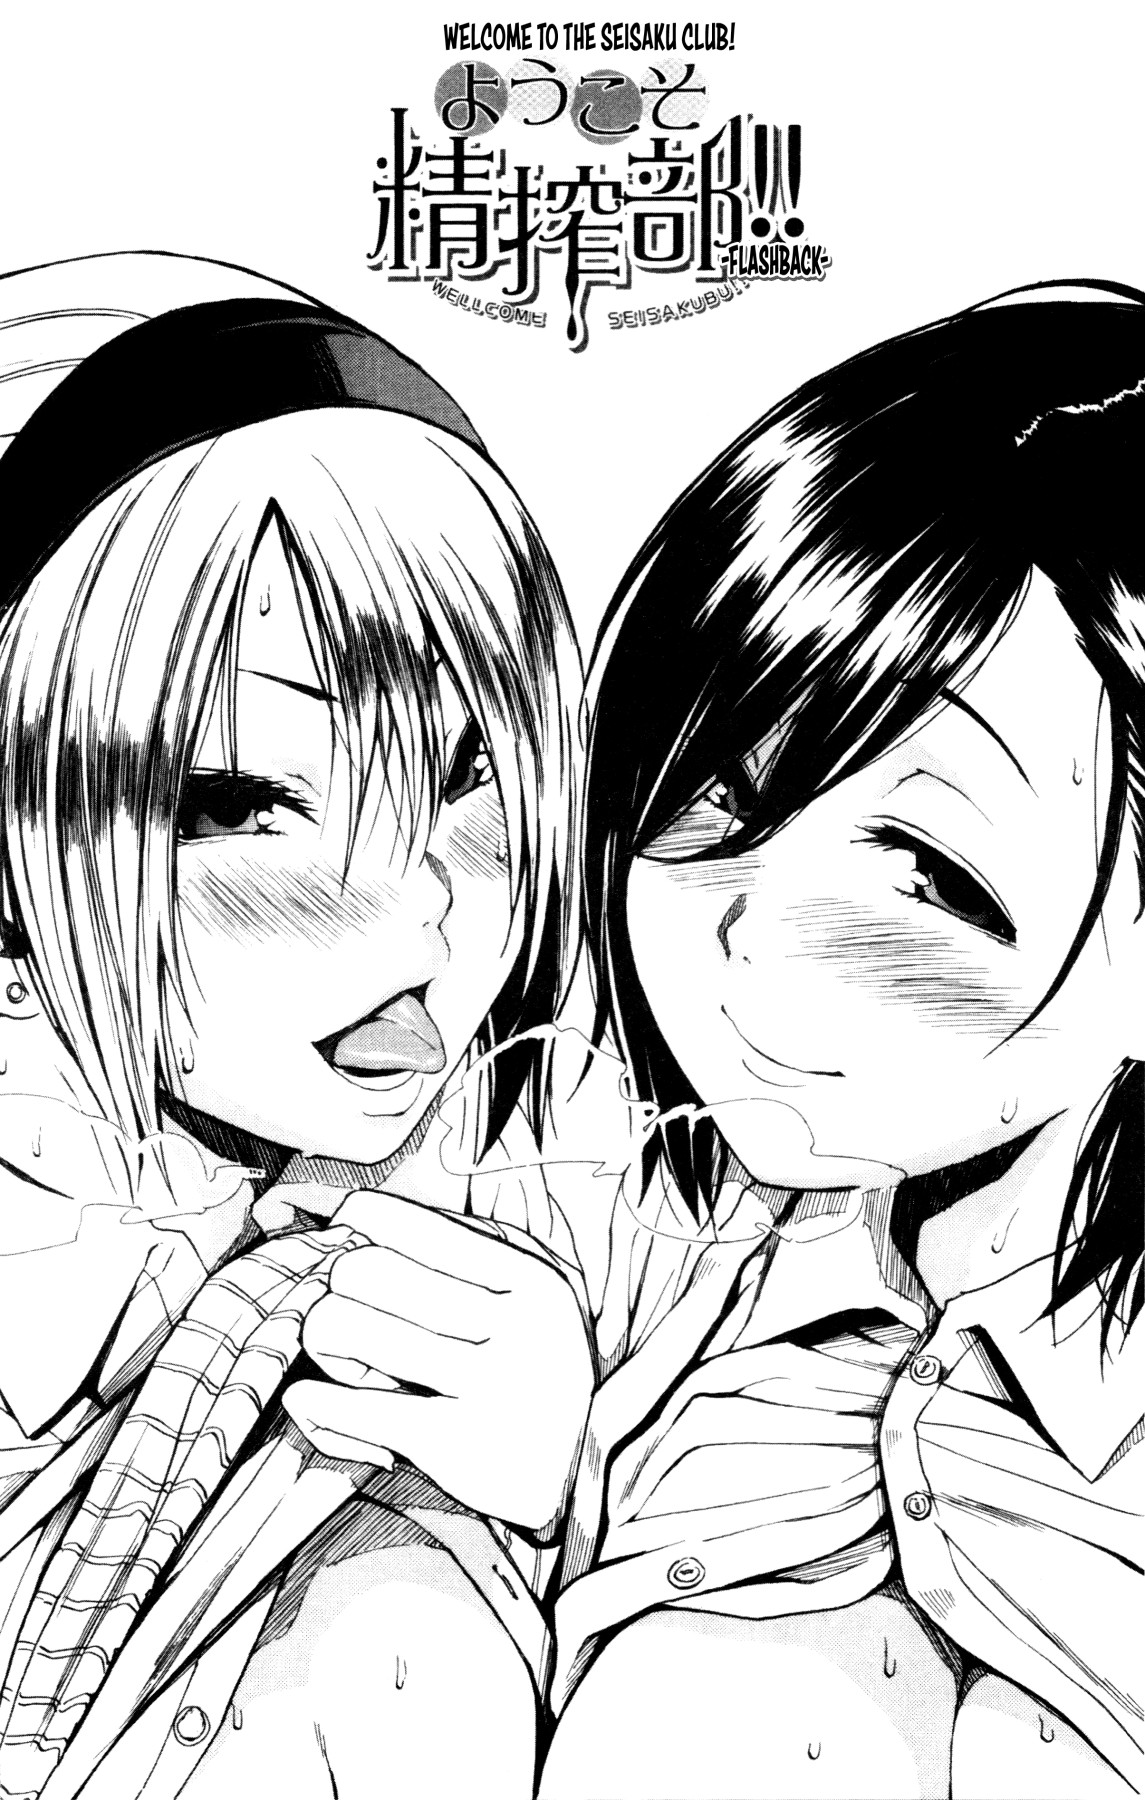 Hentai Manga Comic-welcome To The Seisaku Club! -After--Read-2